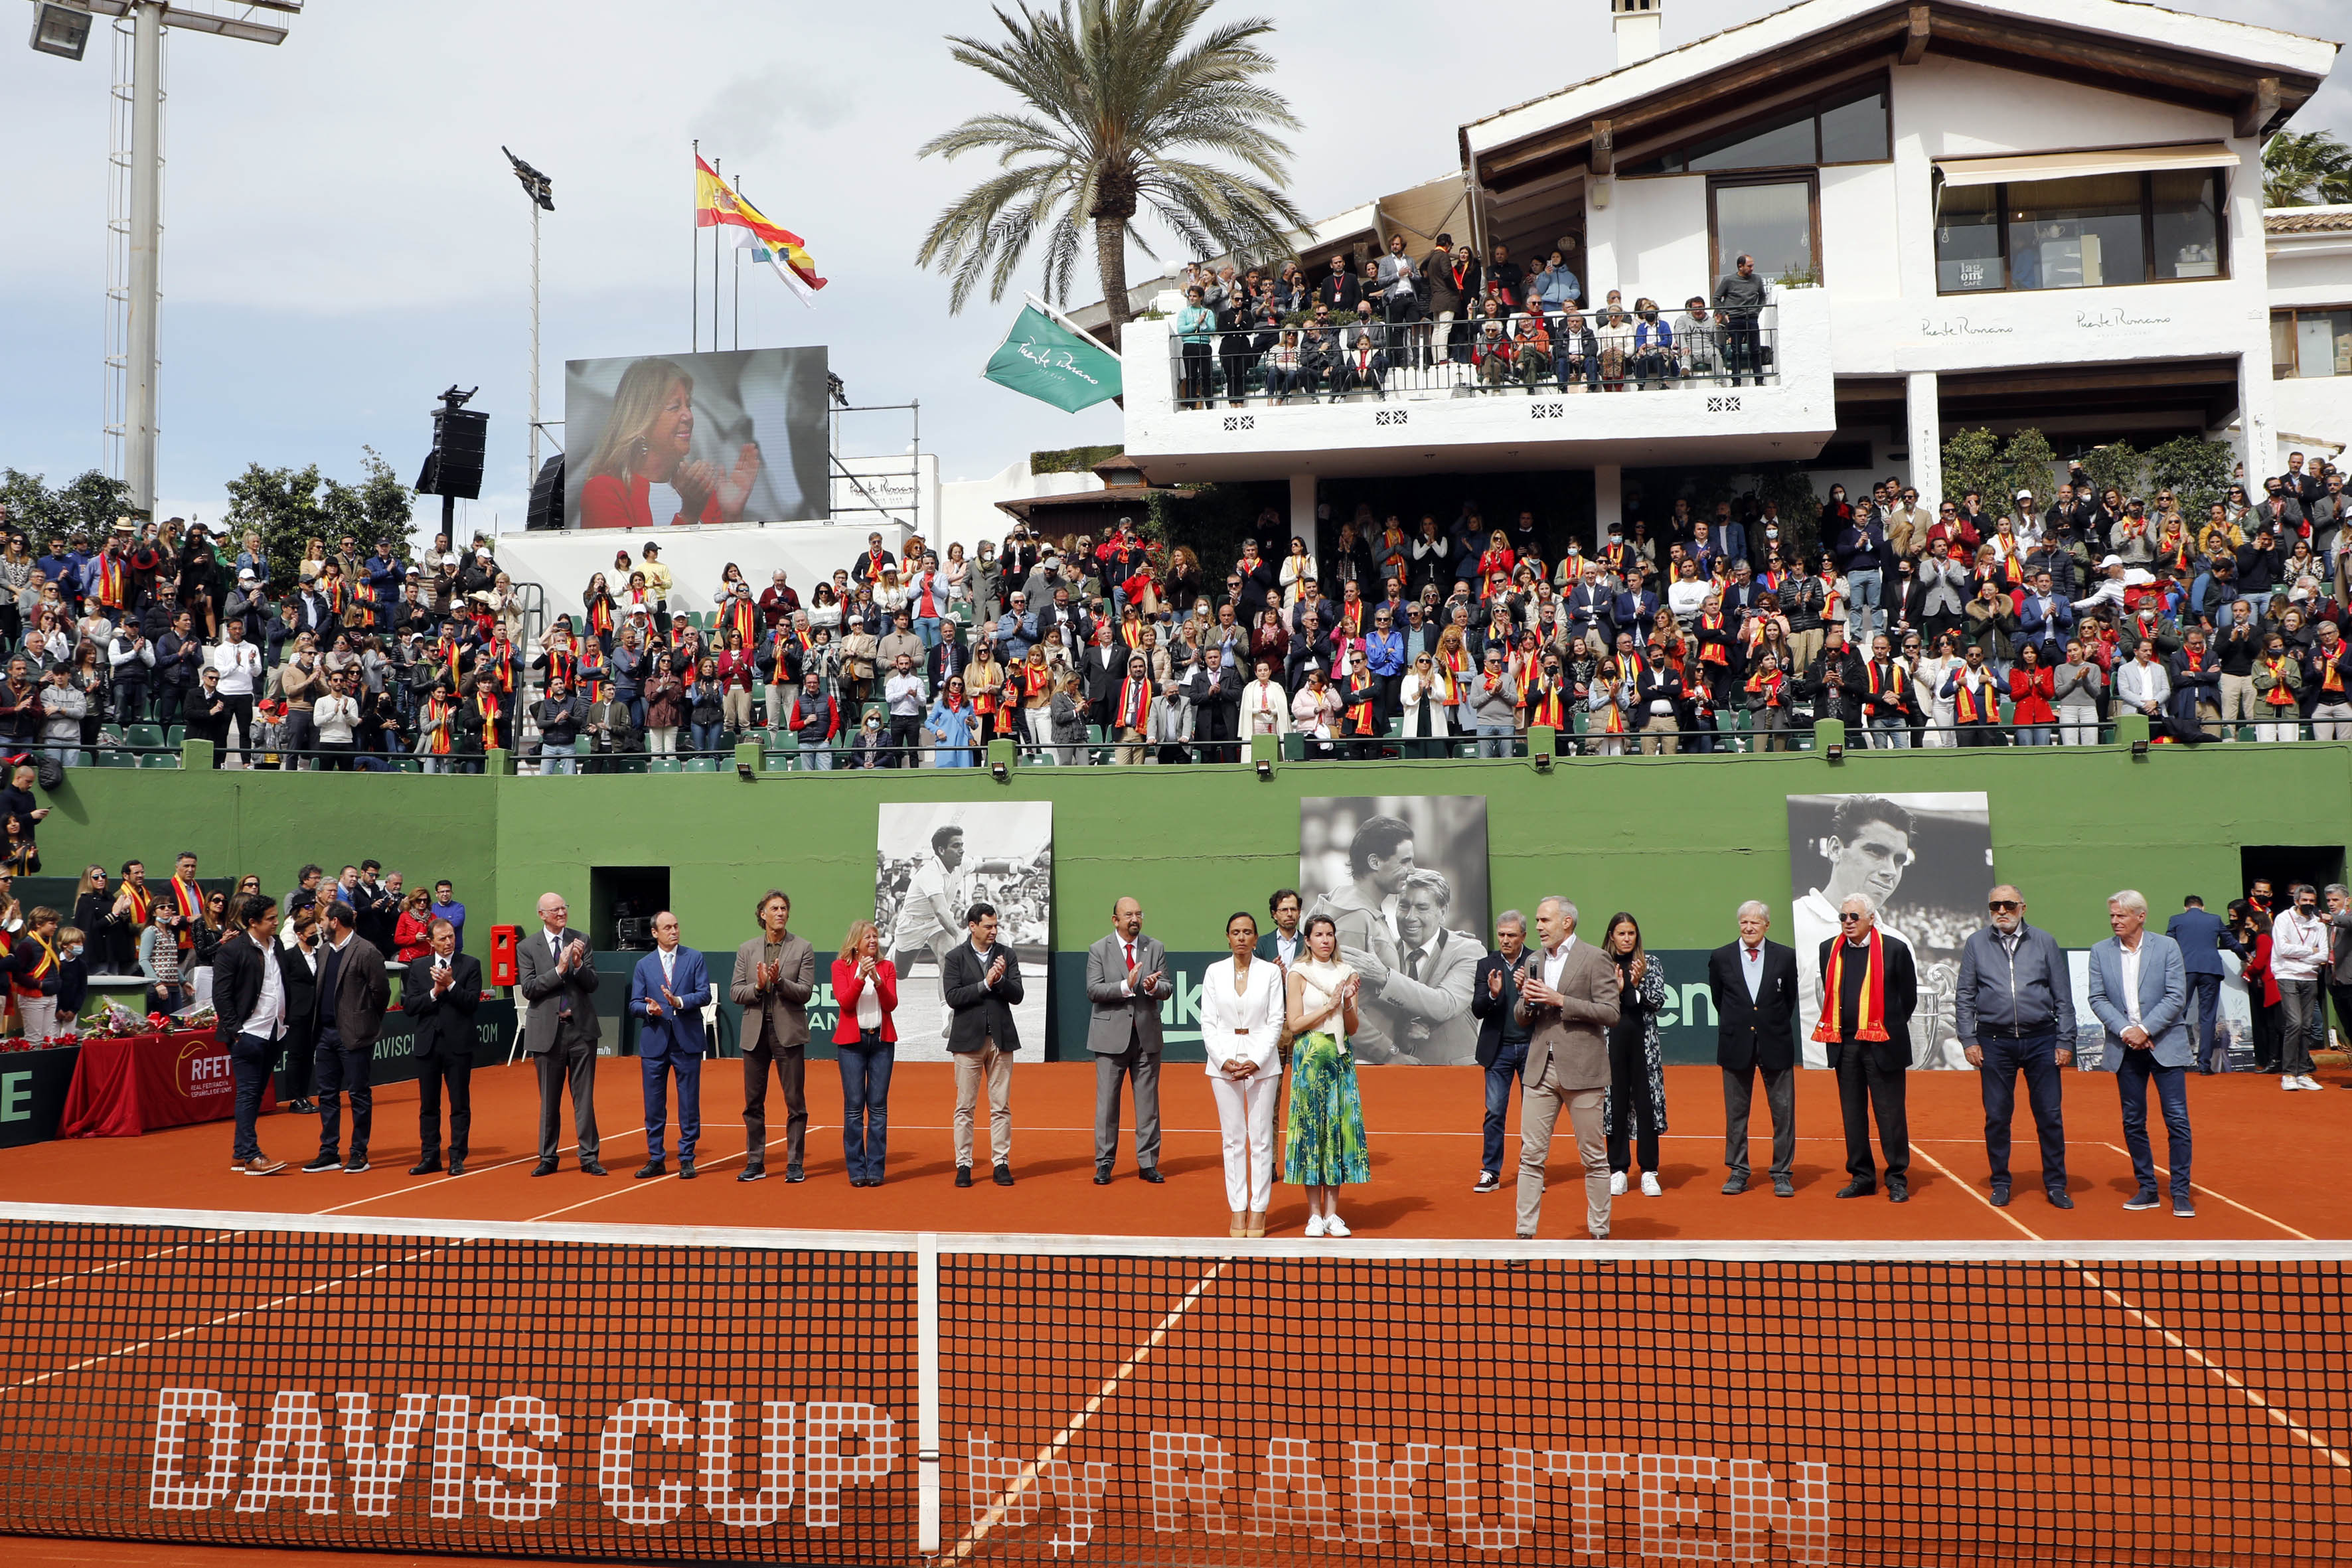 La alcaldesa y el presidente de la Junta destacan “la gran capacidad de promoción” de la Copa Davis para Marbella y Andalucía y recuerdan la labor como embajador del extenista Manolo Santana